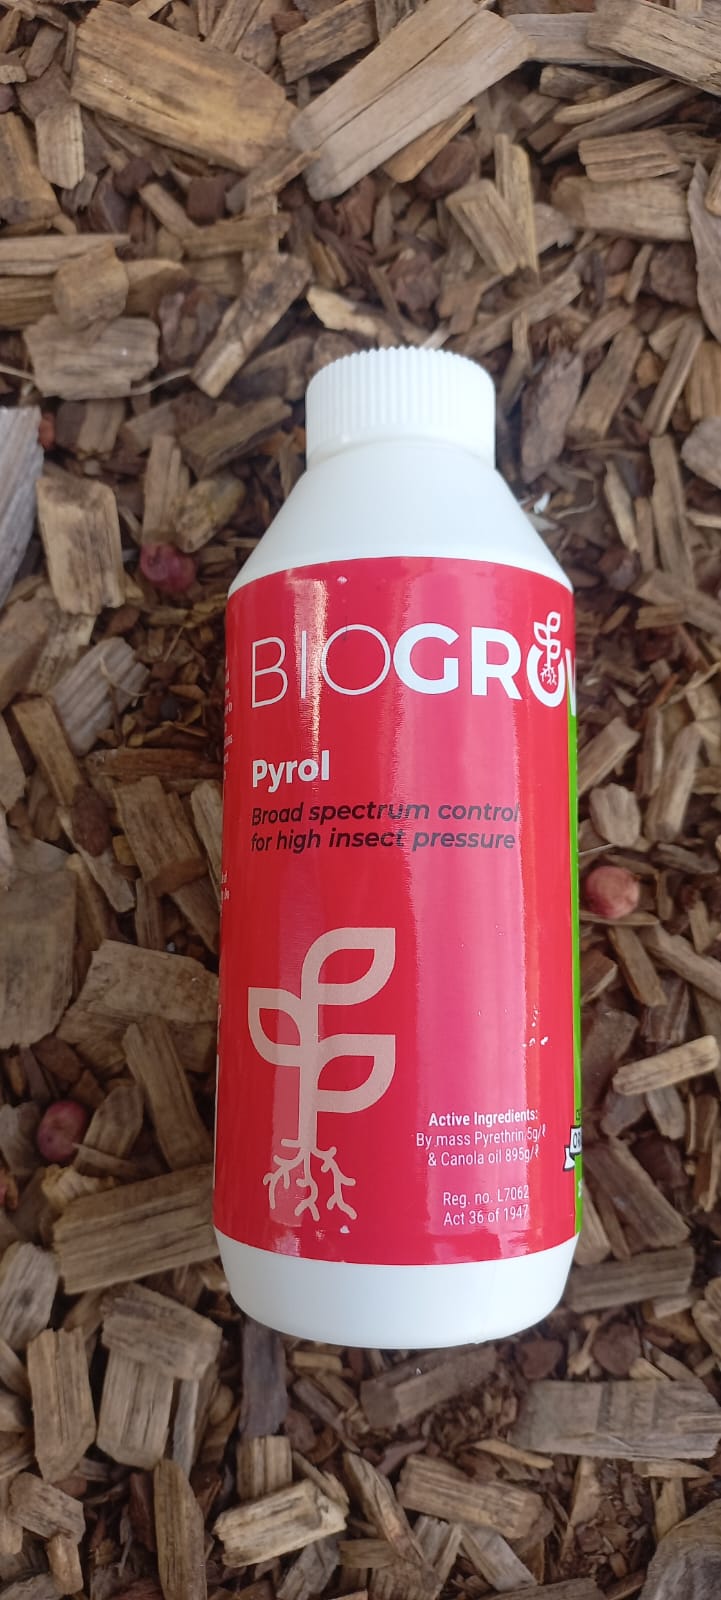 Pyrol (Biogrow)